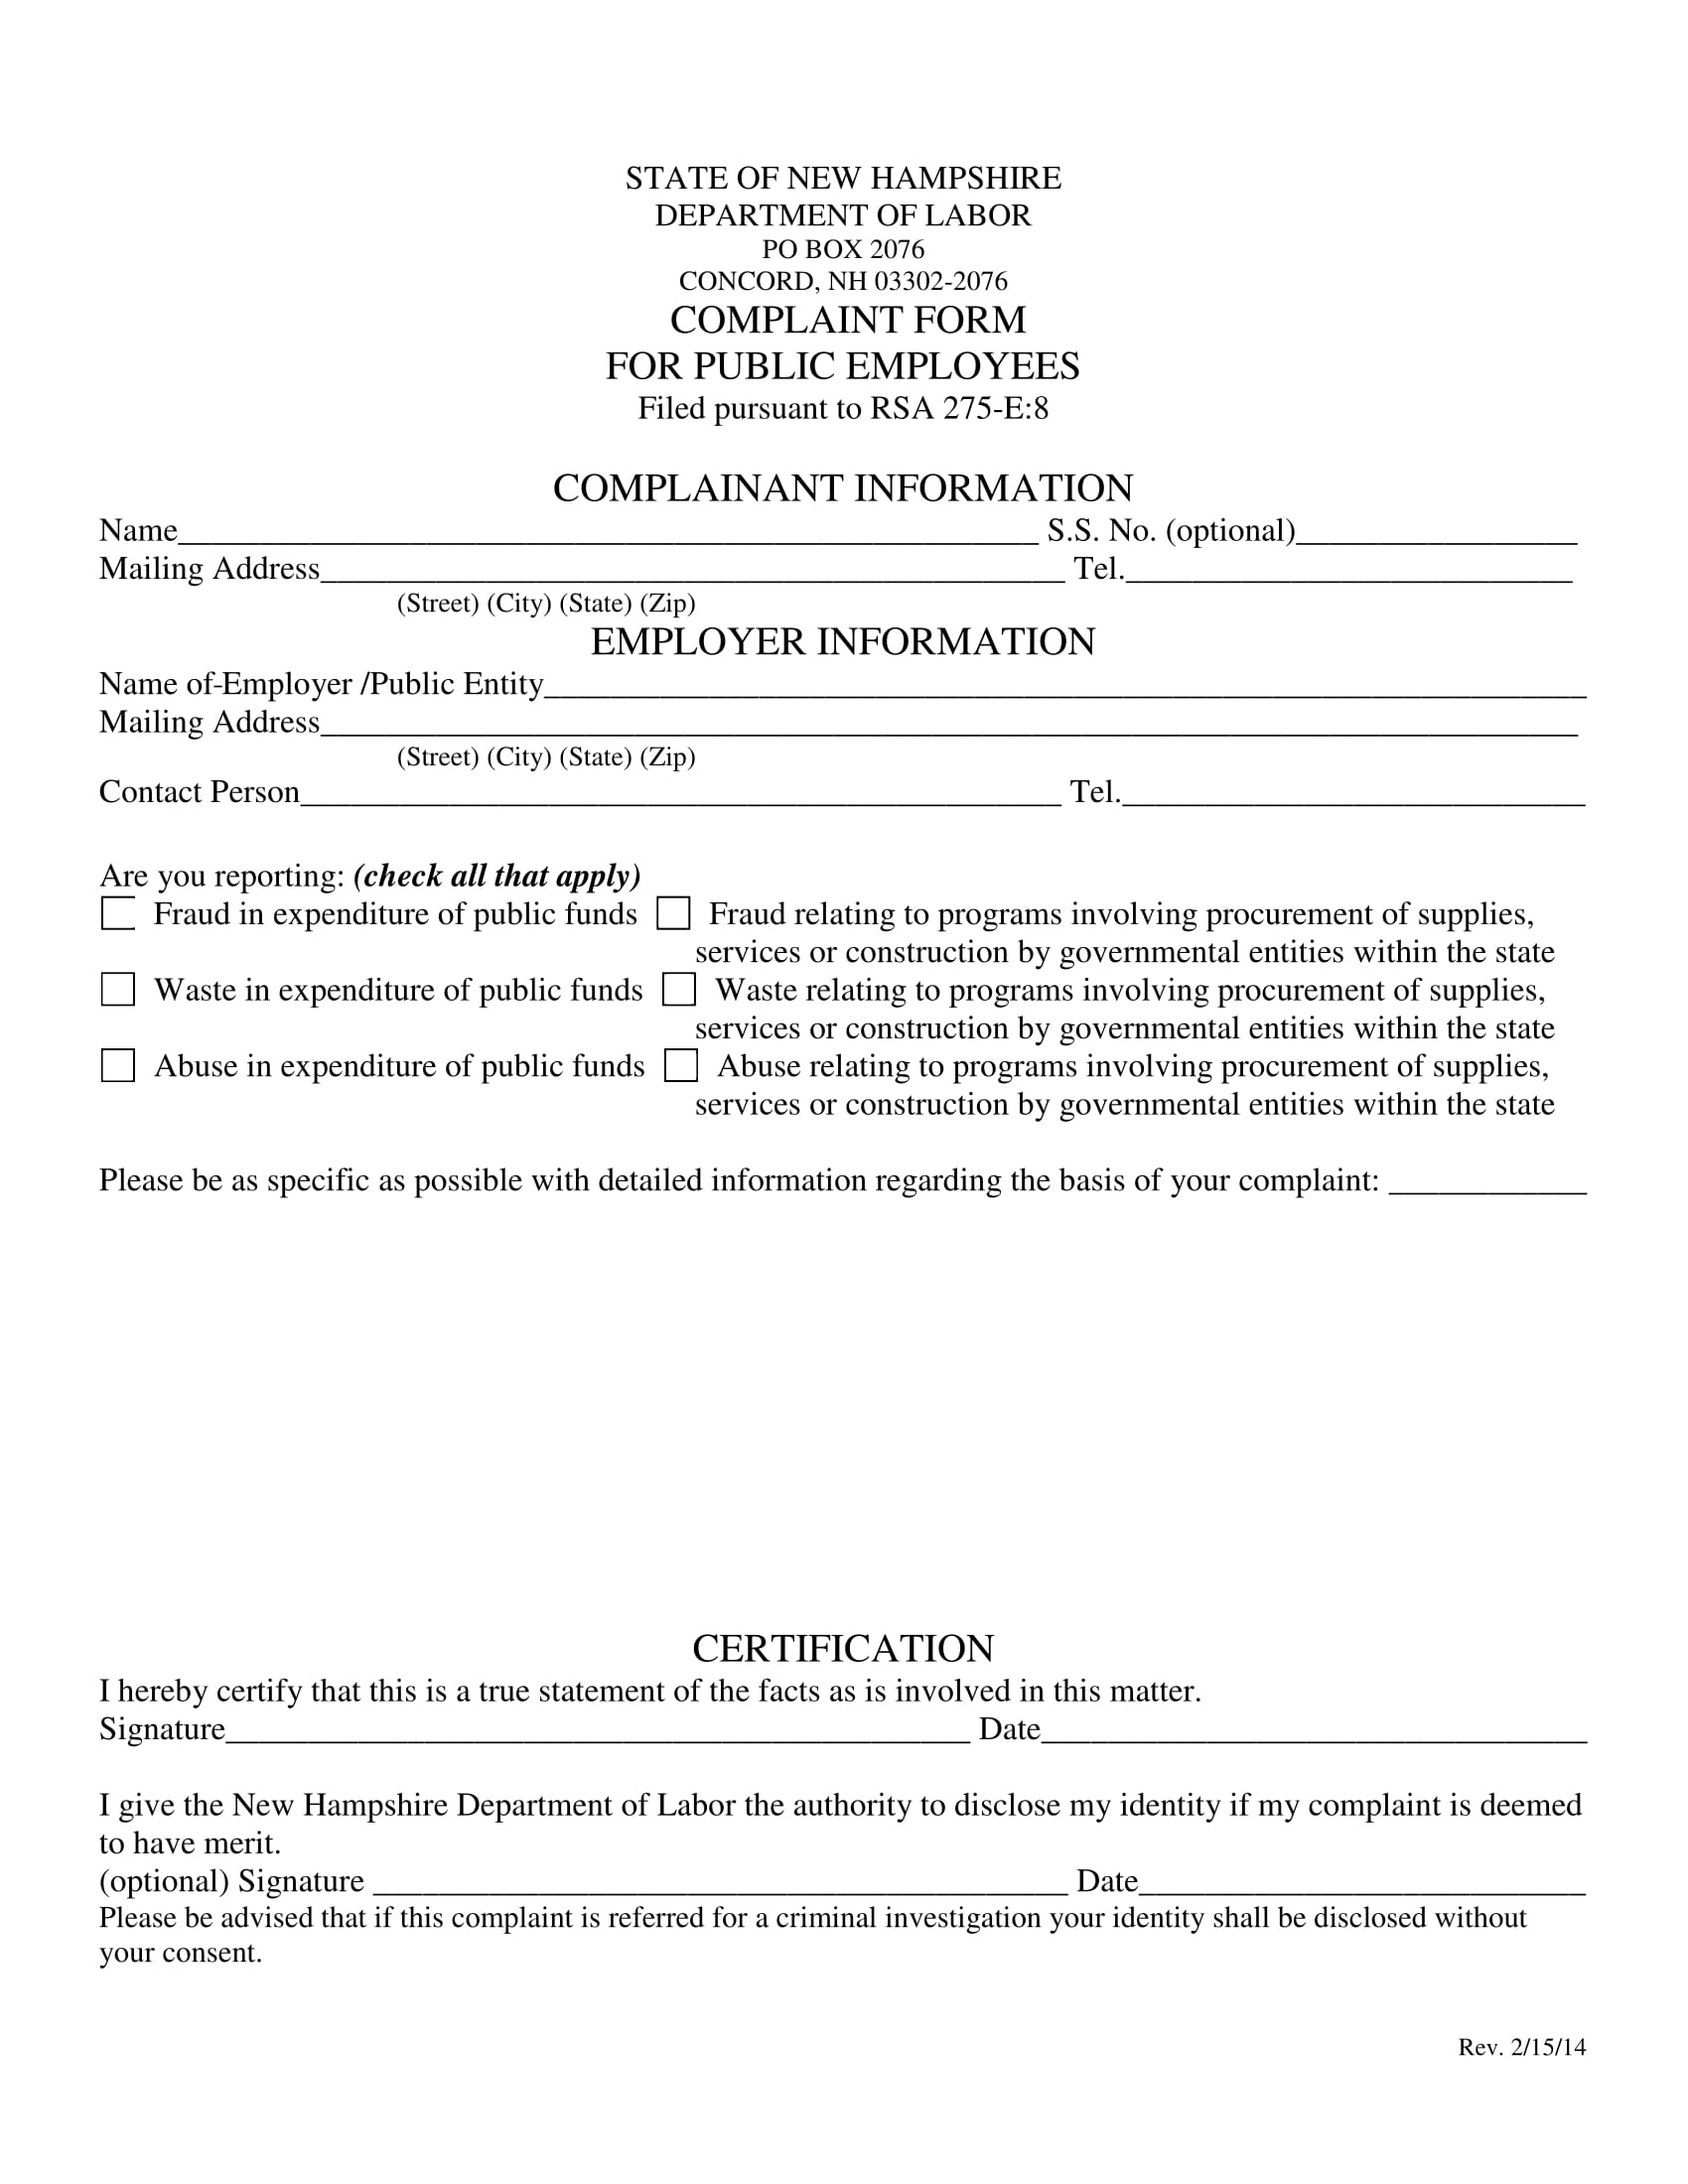 public employee complaint form 1